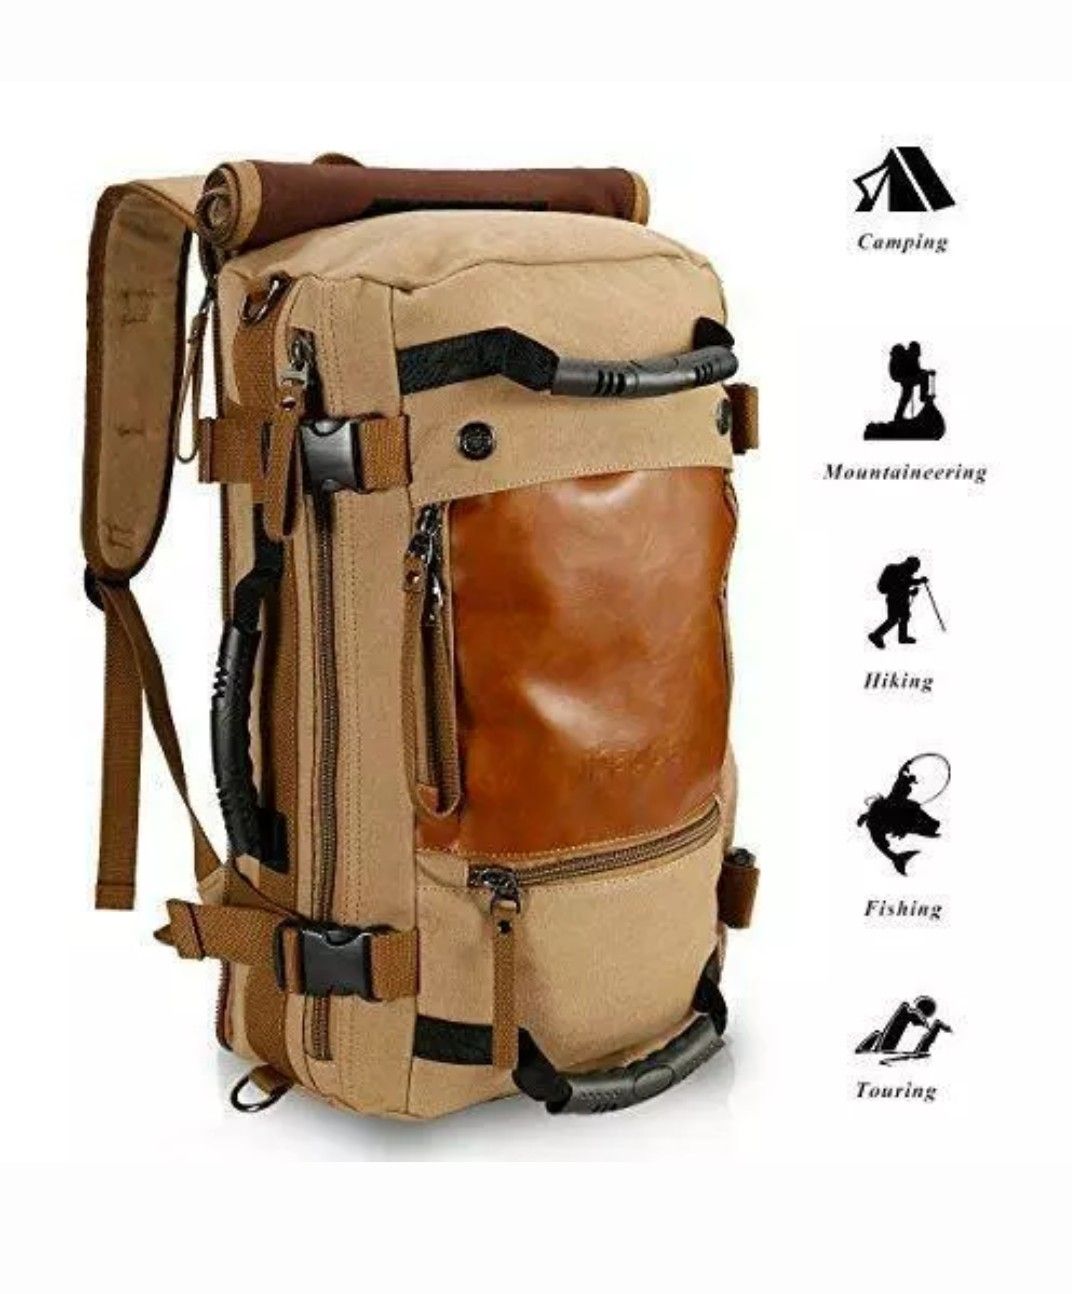 New hiking backpack bag